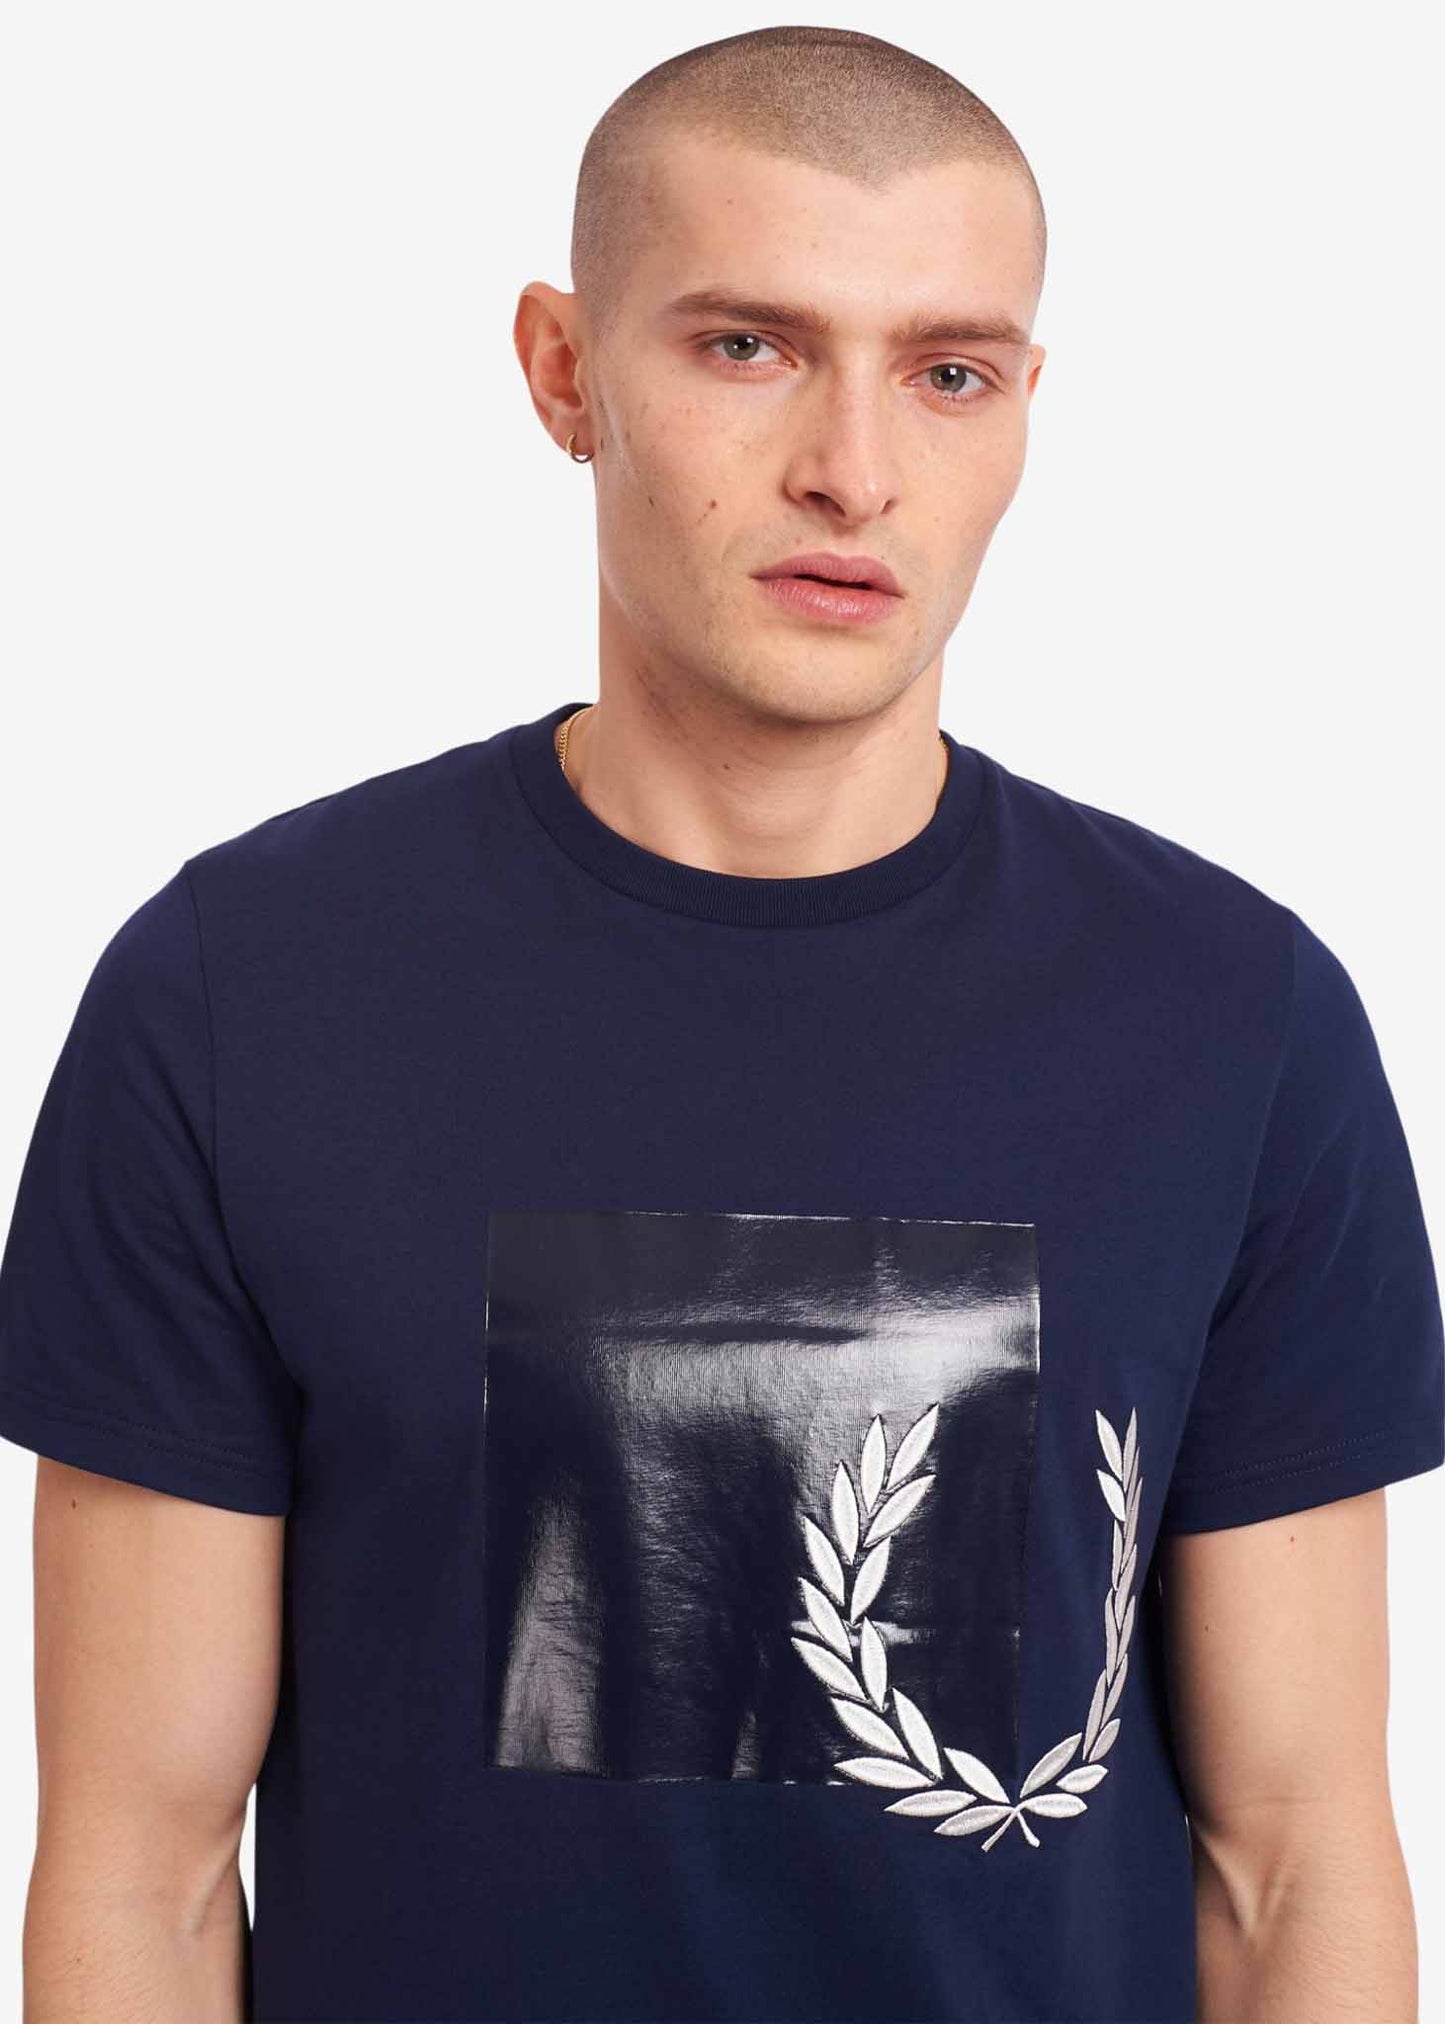 Tonal graphic t-shirt - carbon blue